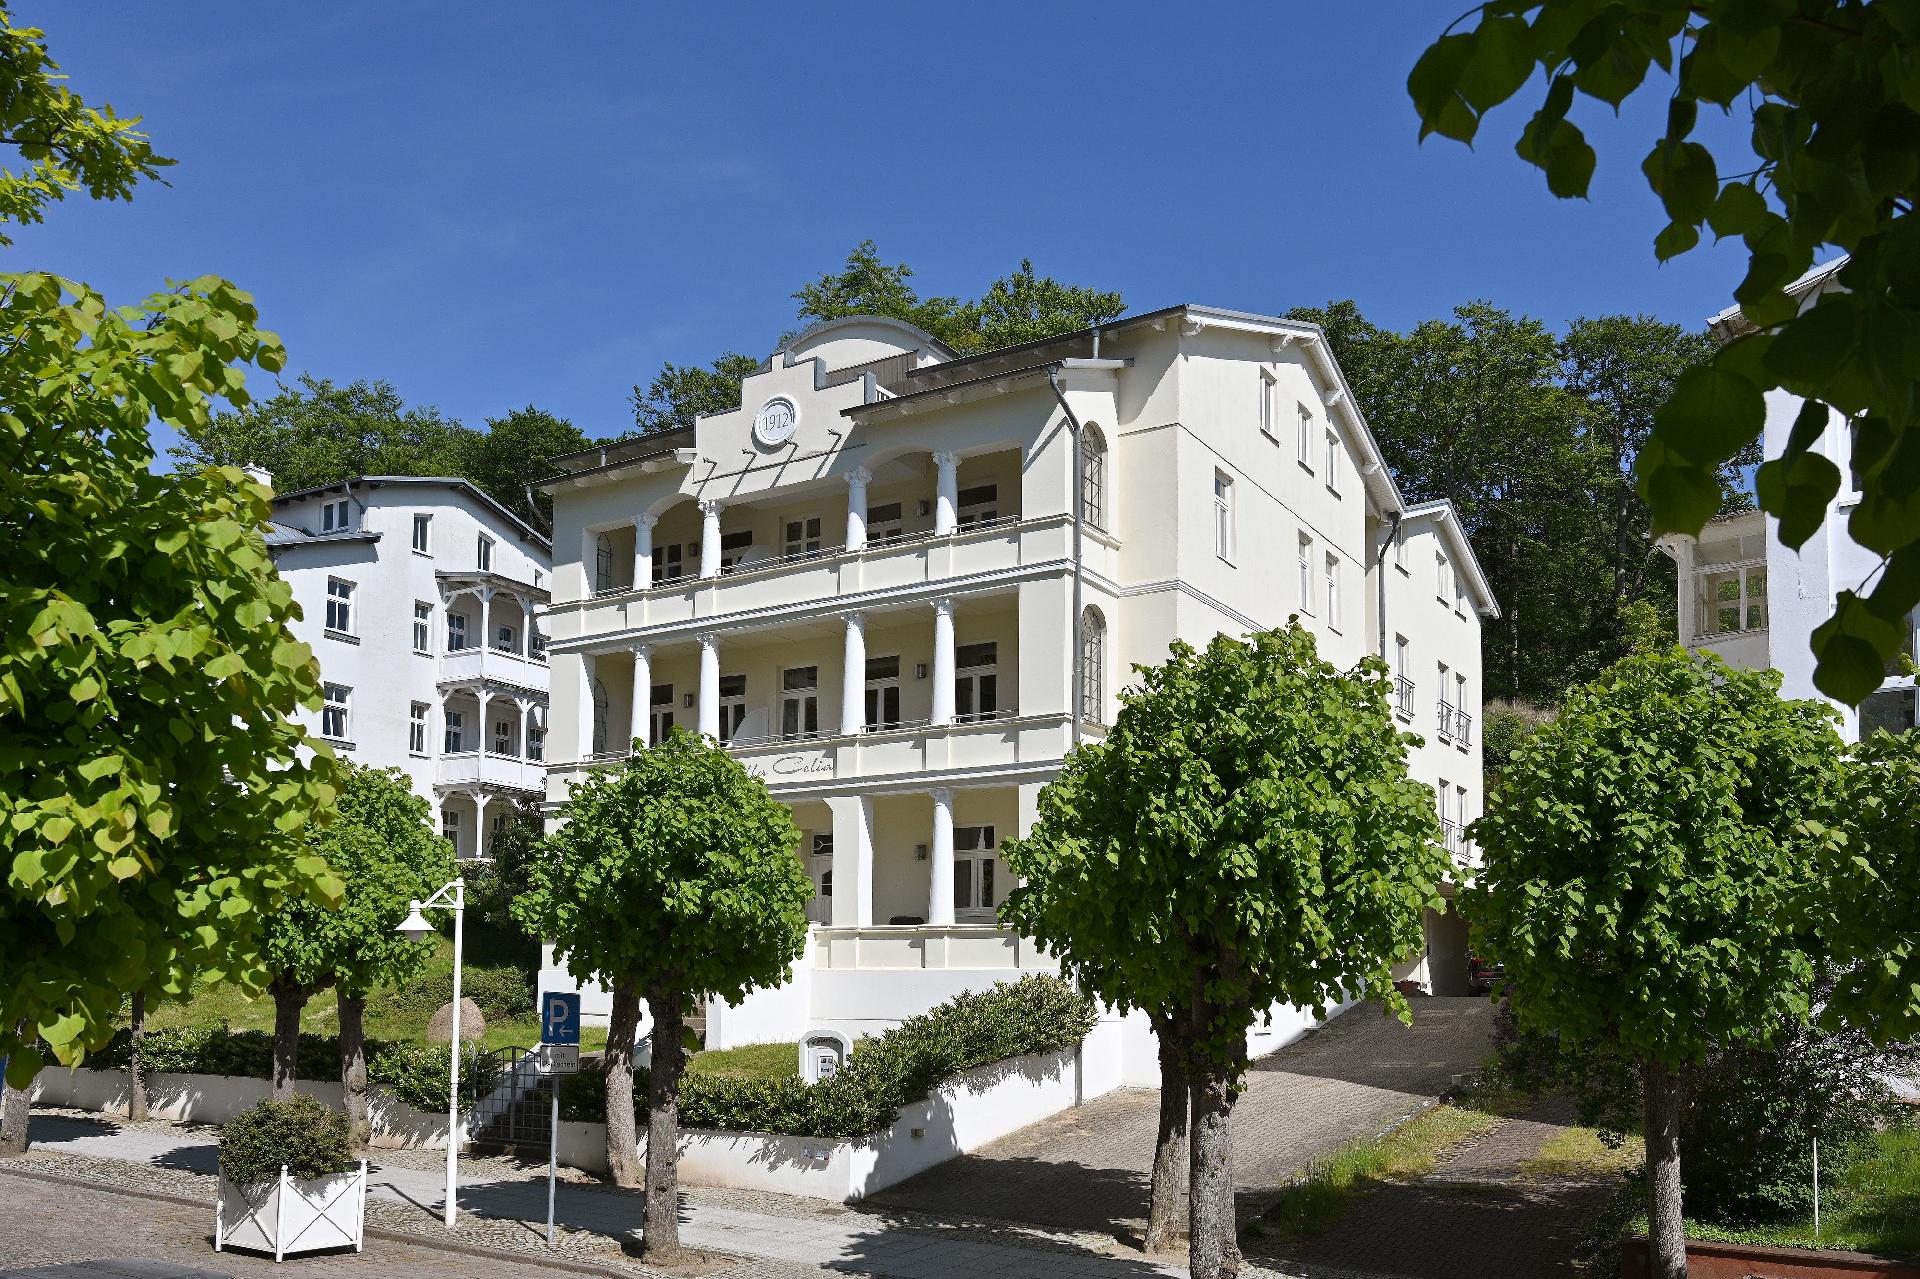 Ferienwohnung für 6 Personen ca. 72 m² i  in Deutschland